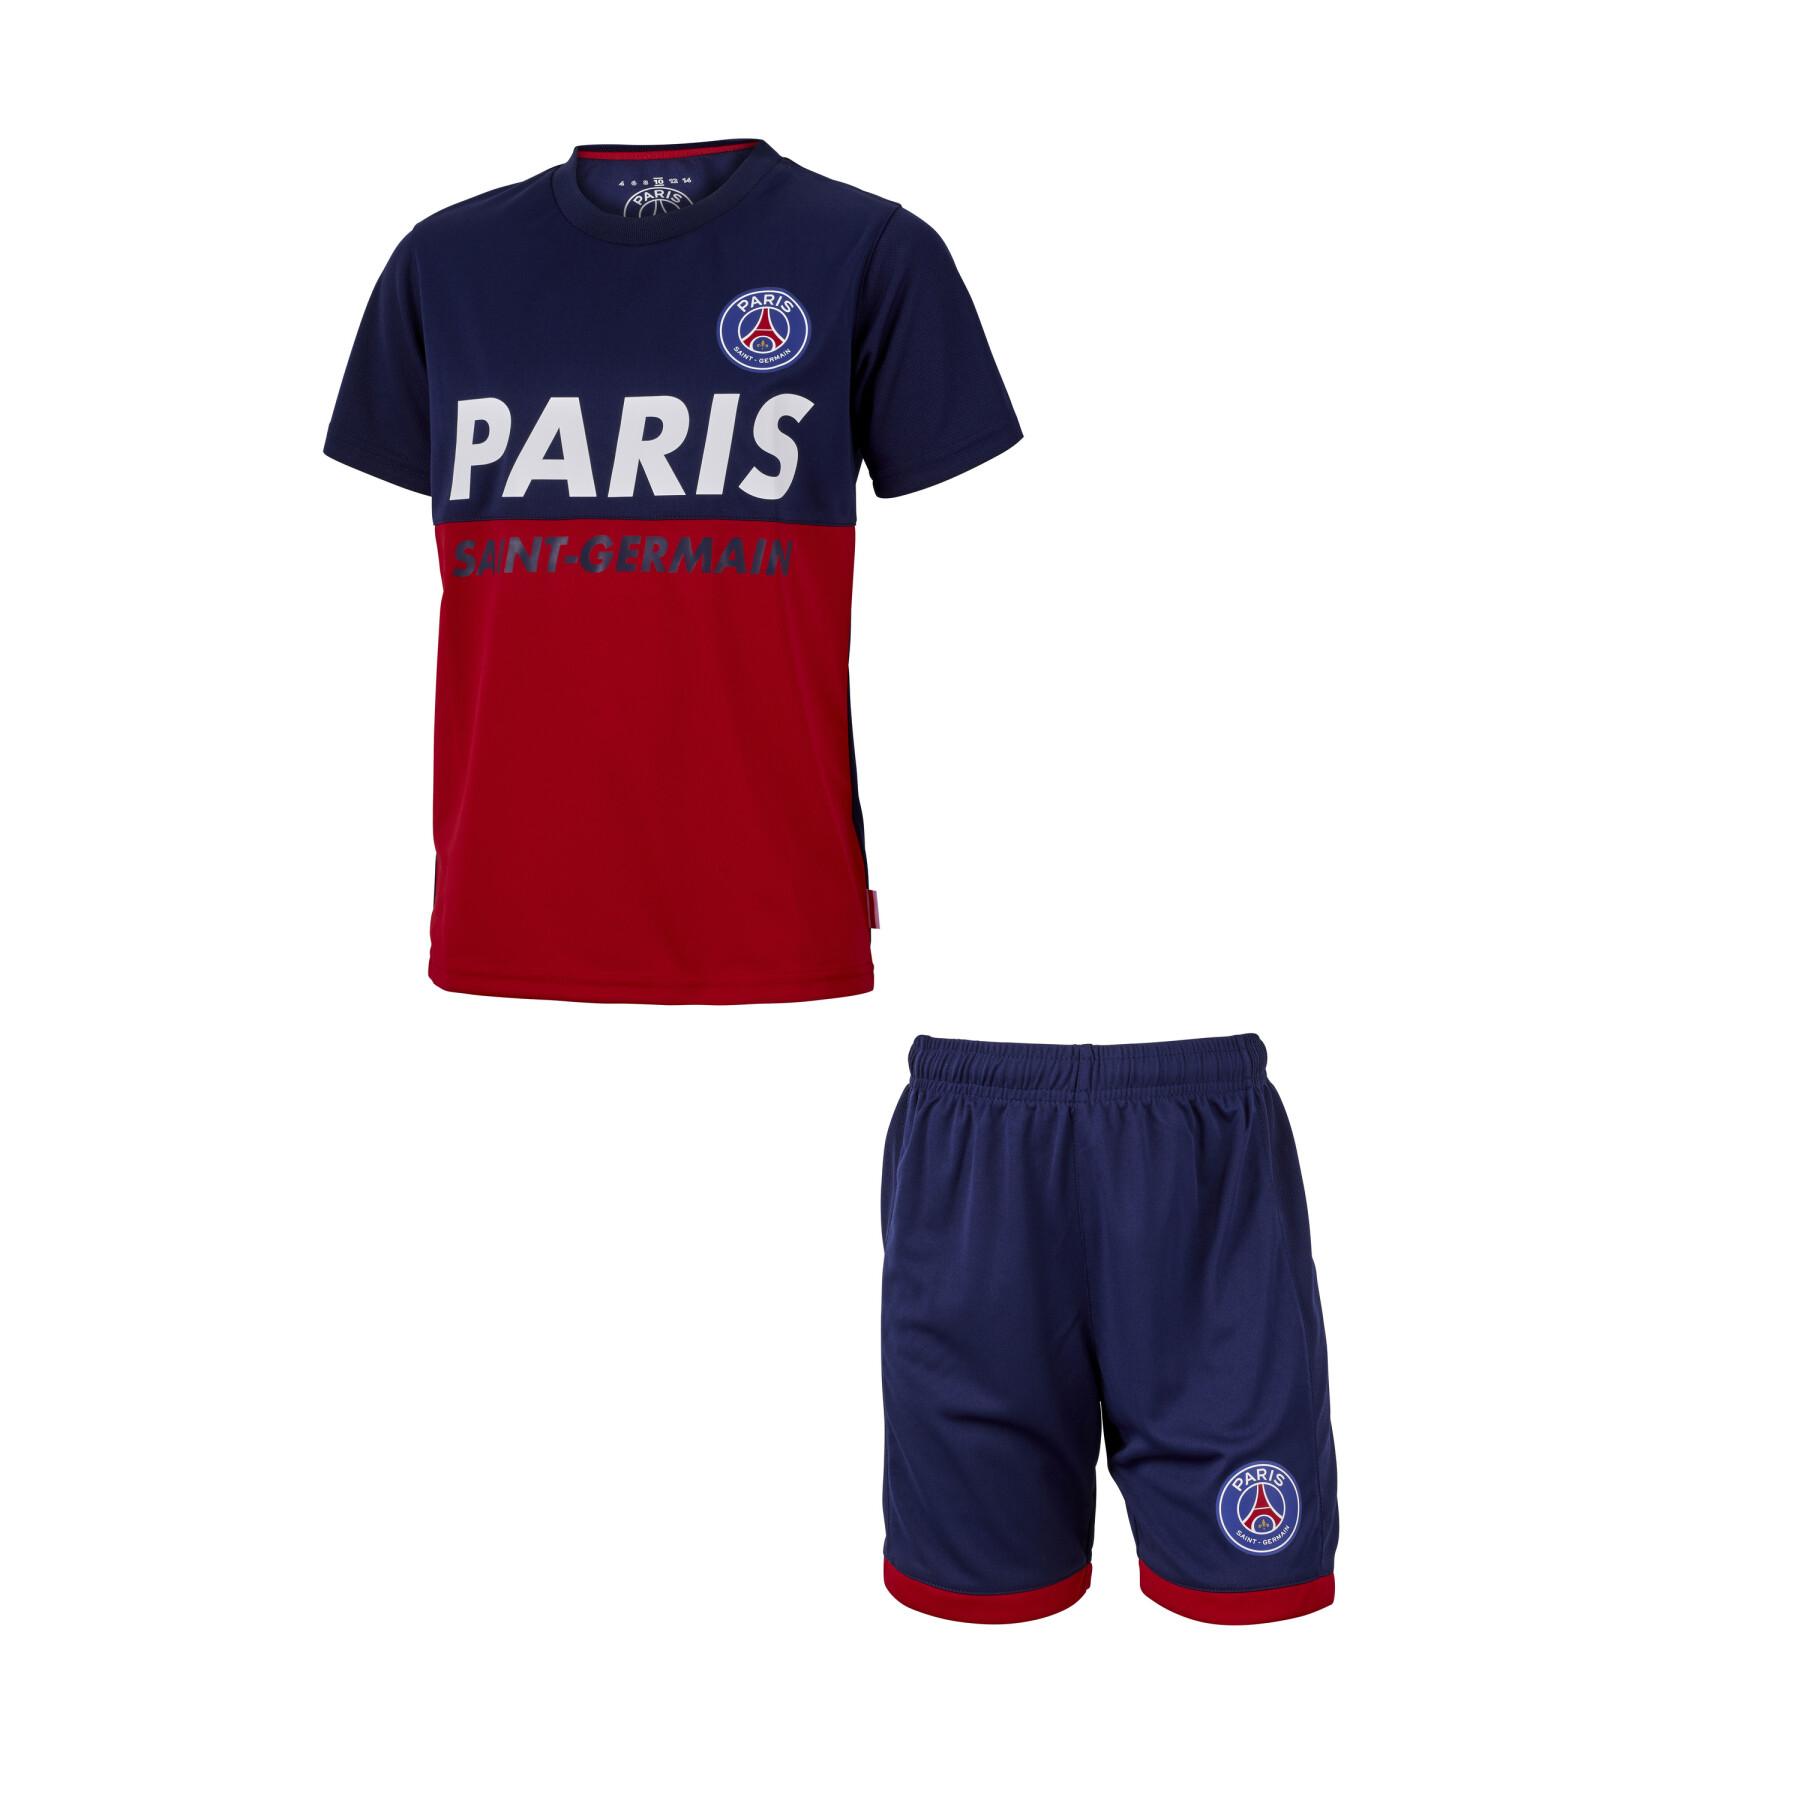 Paris Saint-Germain FC - PSG tréningový set detský - dres + kraťasy - SKLADOM